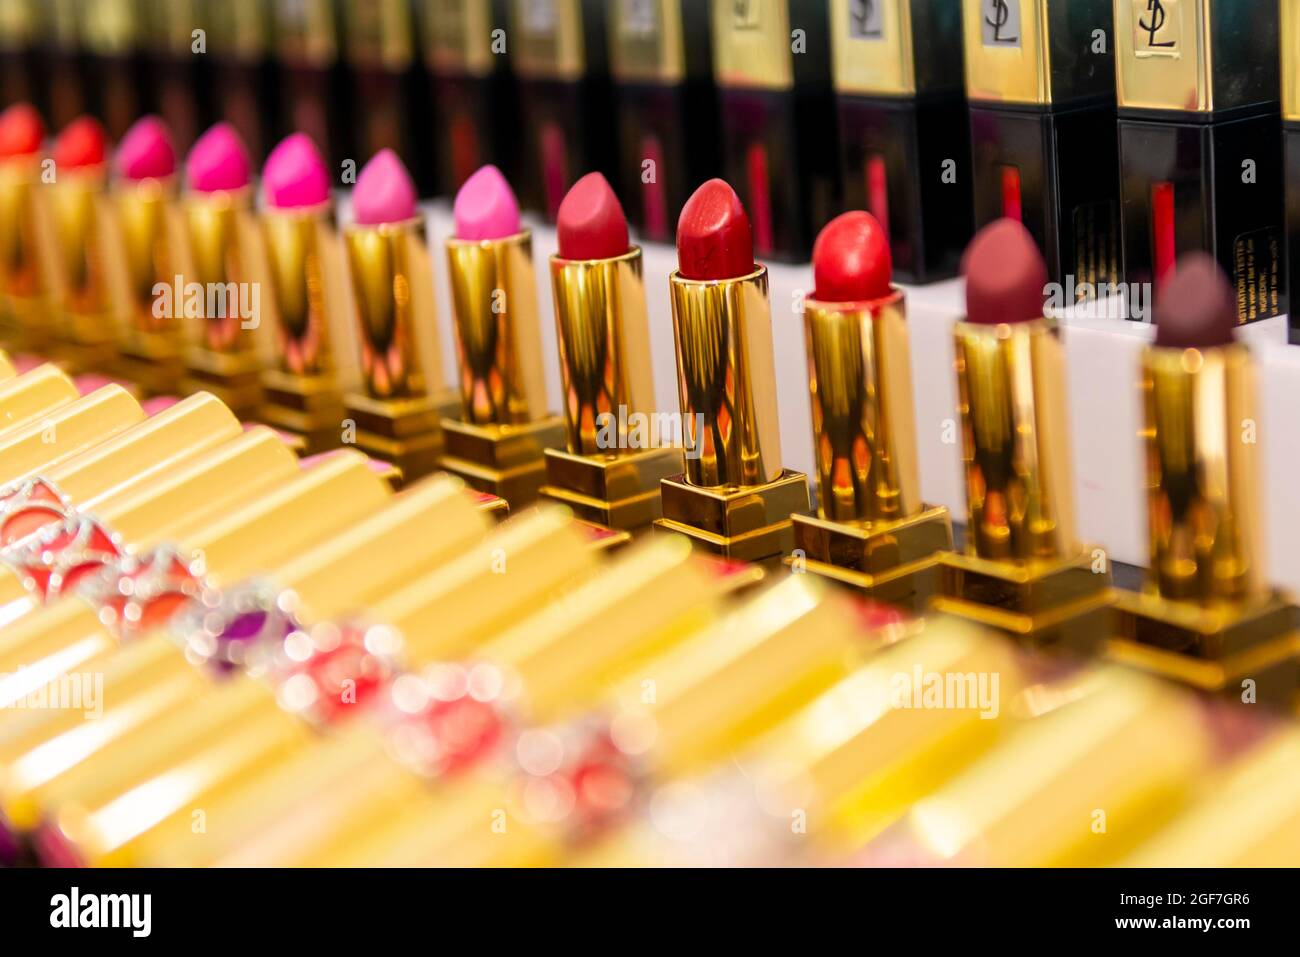 Rouge à lèvres, rayon maquillage, grands magasins de luxe, Harrods, Londres, Angleterre, Grande-Bretagne Banque D'Images